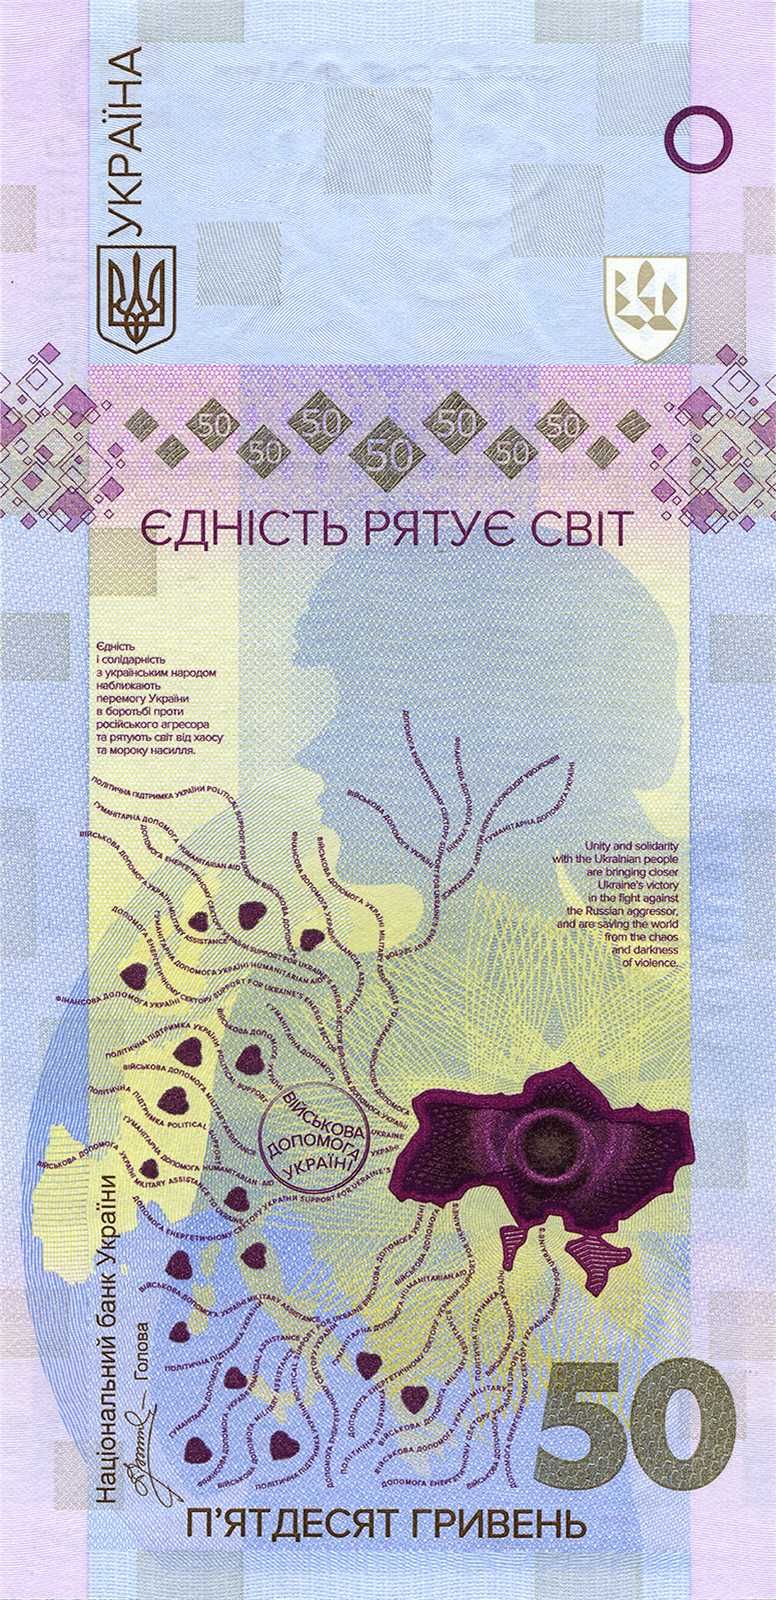 Пам`ятна банкнота `Єдність рятує світ` у сувенірному пакованні